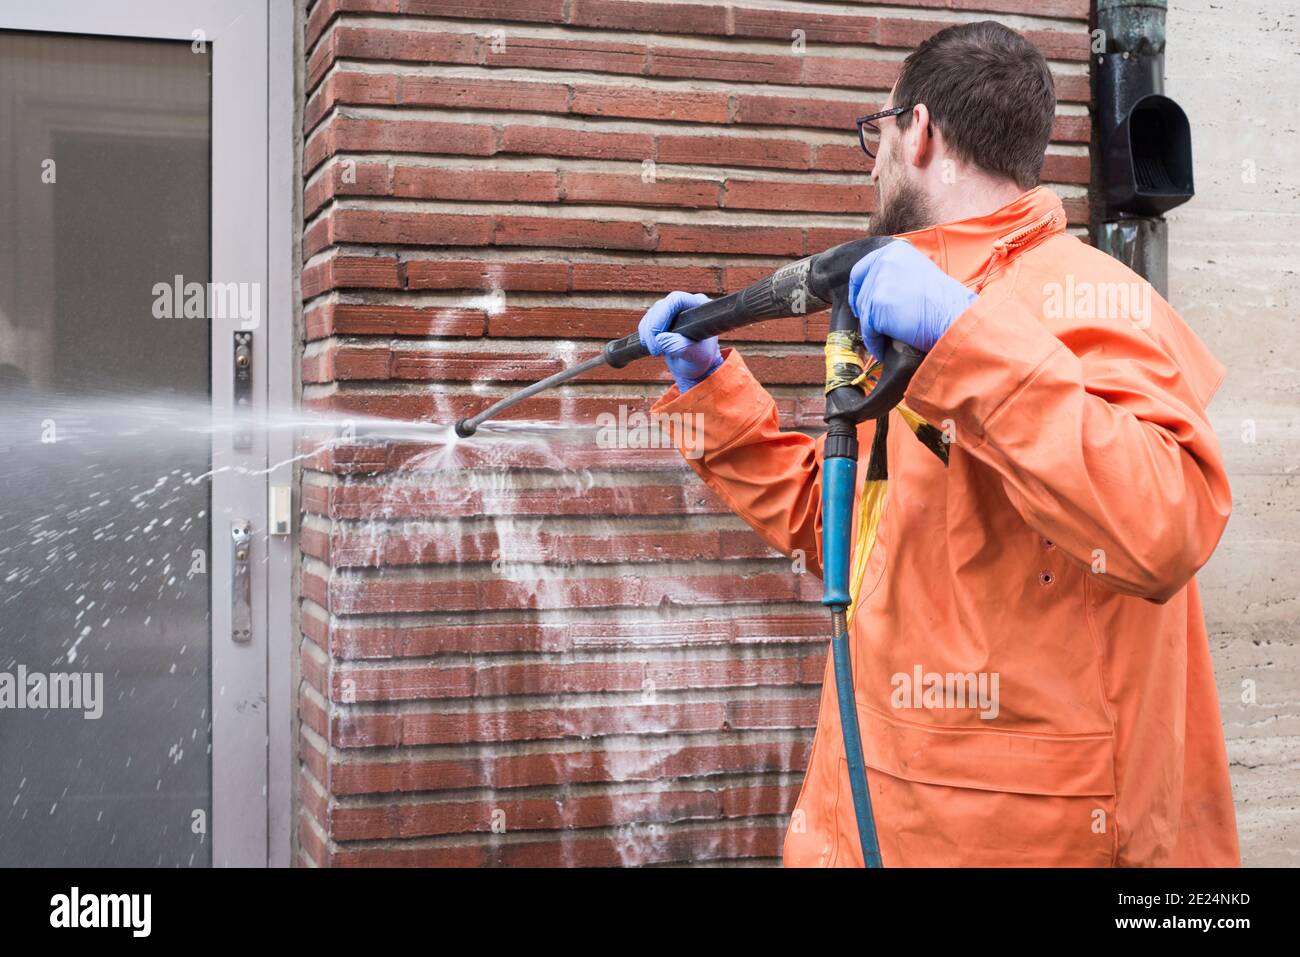 Uomo che pulisce i graffiti dalla parete Foto Stock